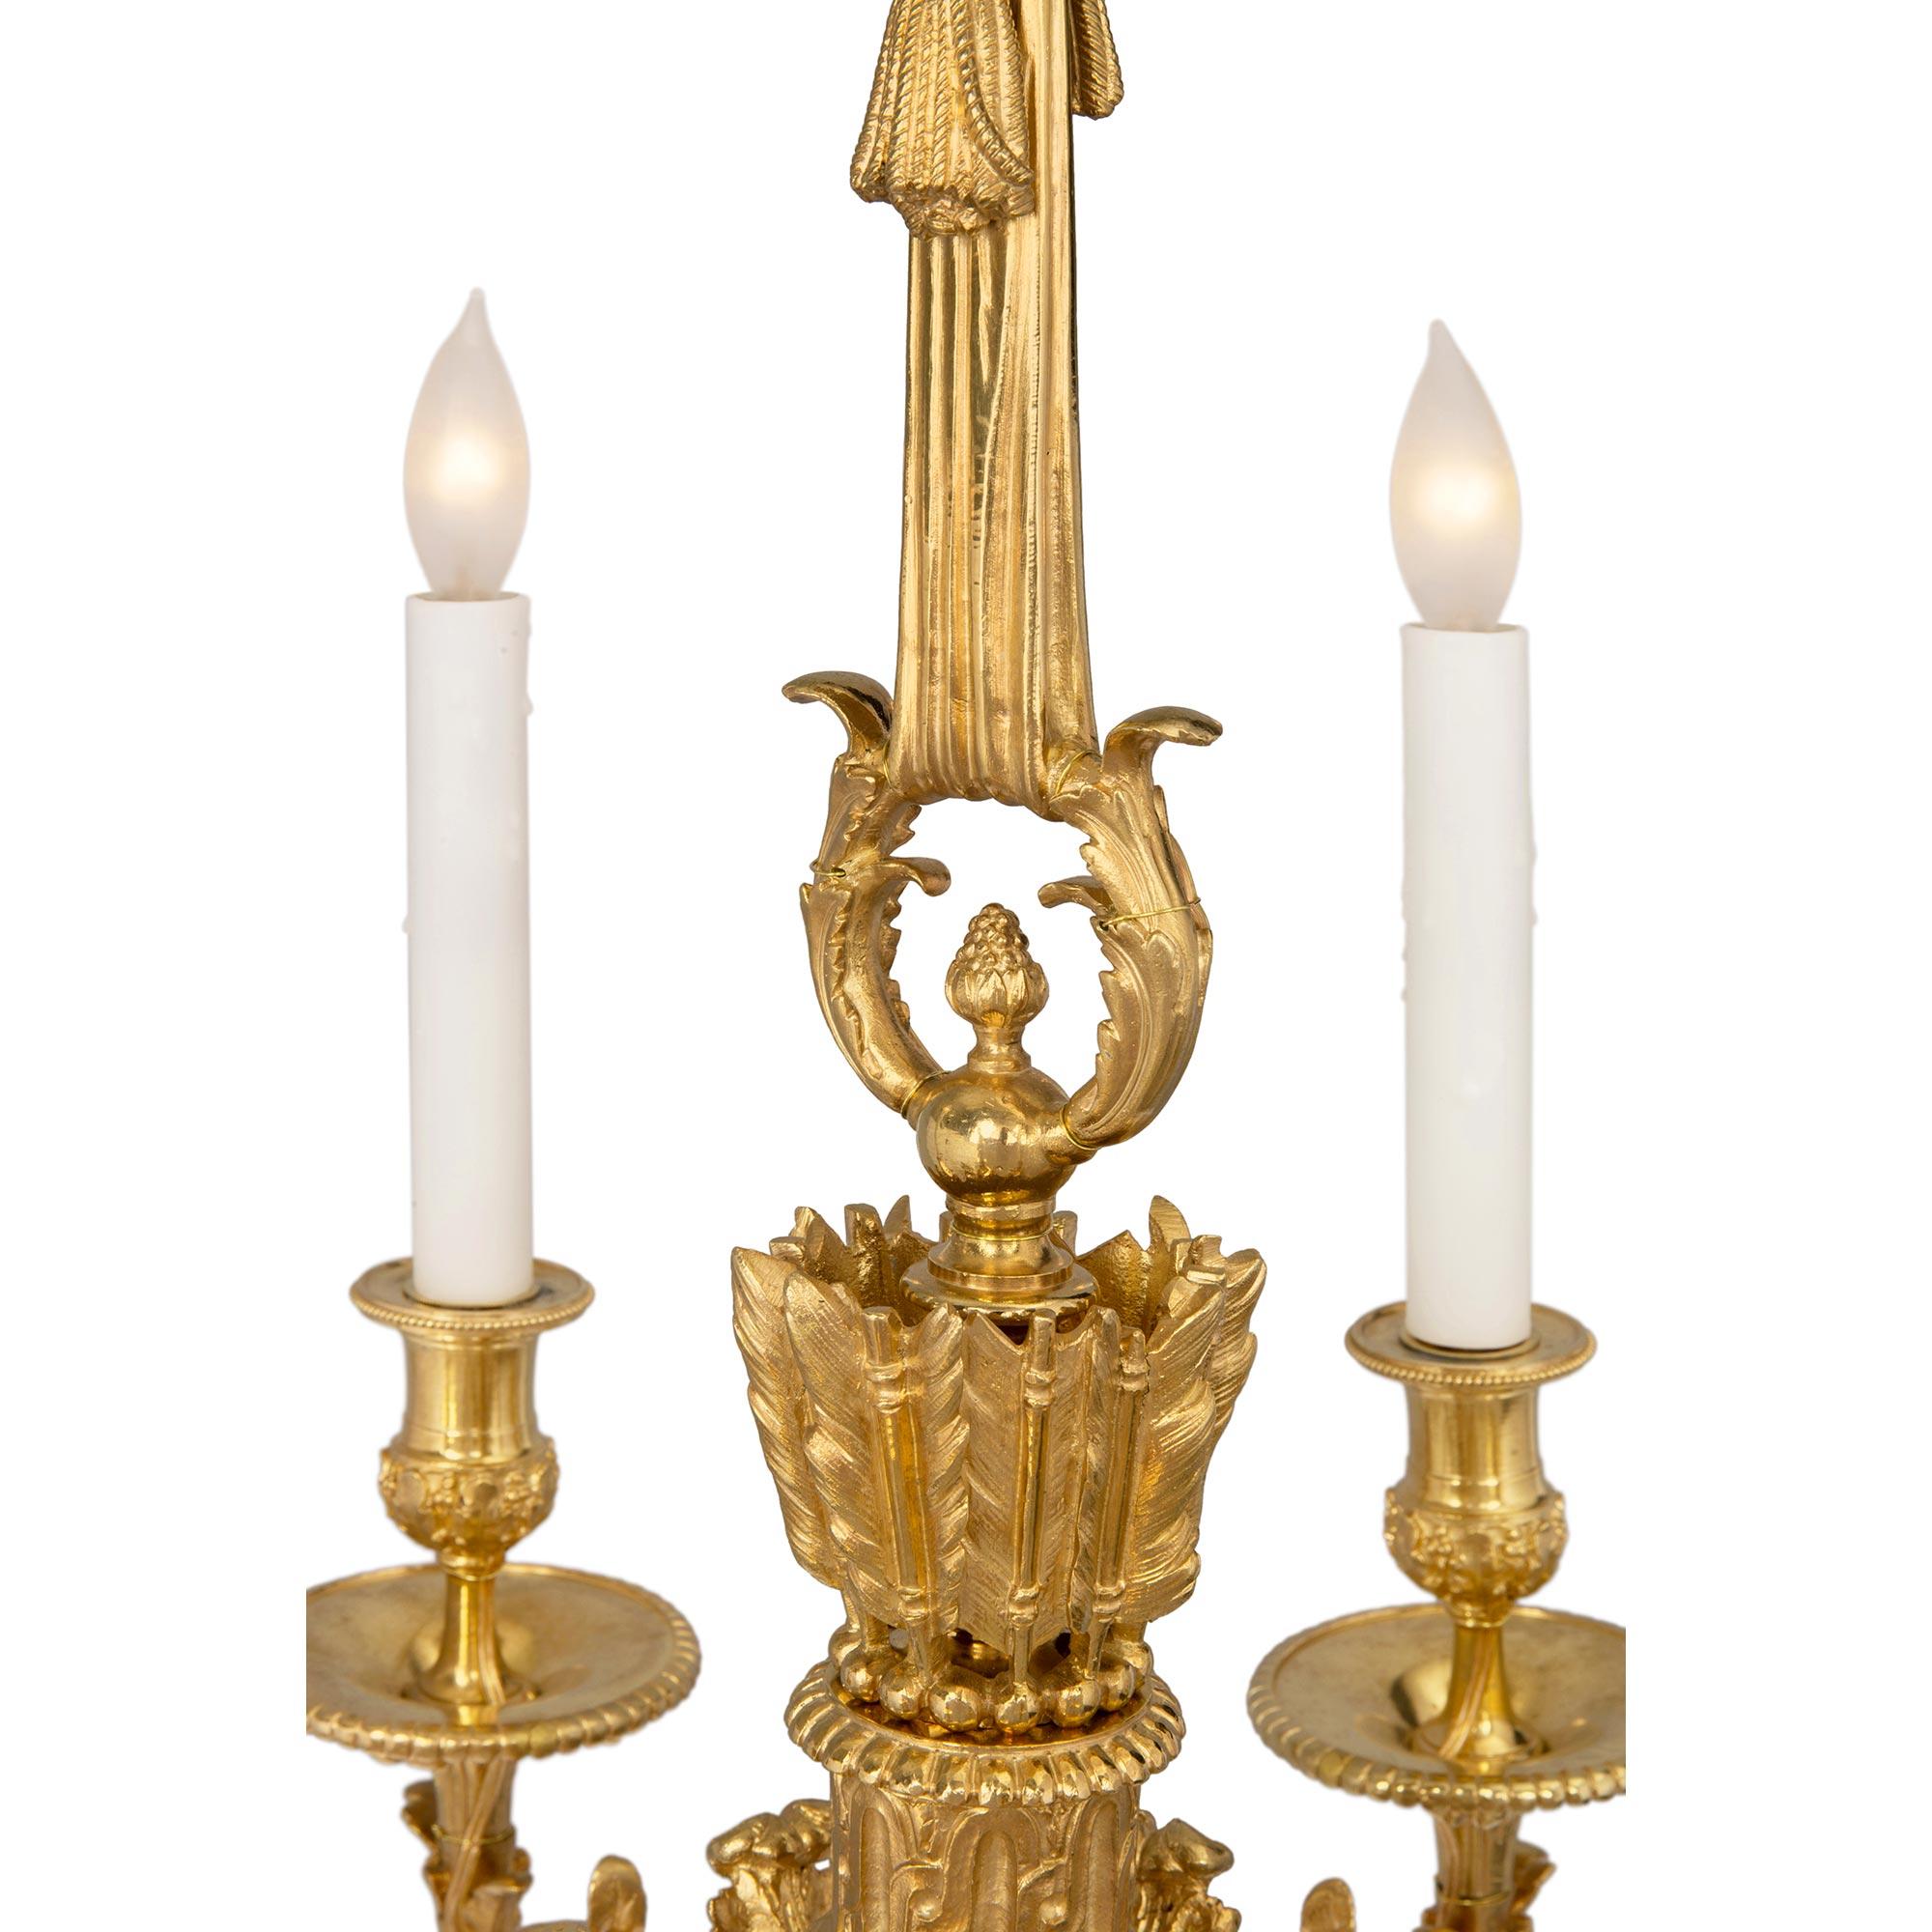 French 19th Century Louis XVI St. Belle Époque Period Six-Arm Ormolu Chandelier For Sale 1